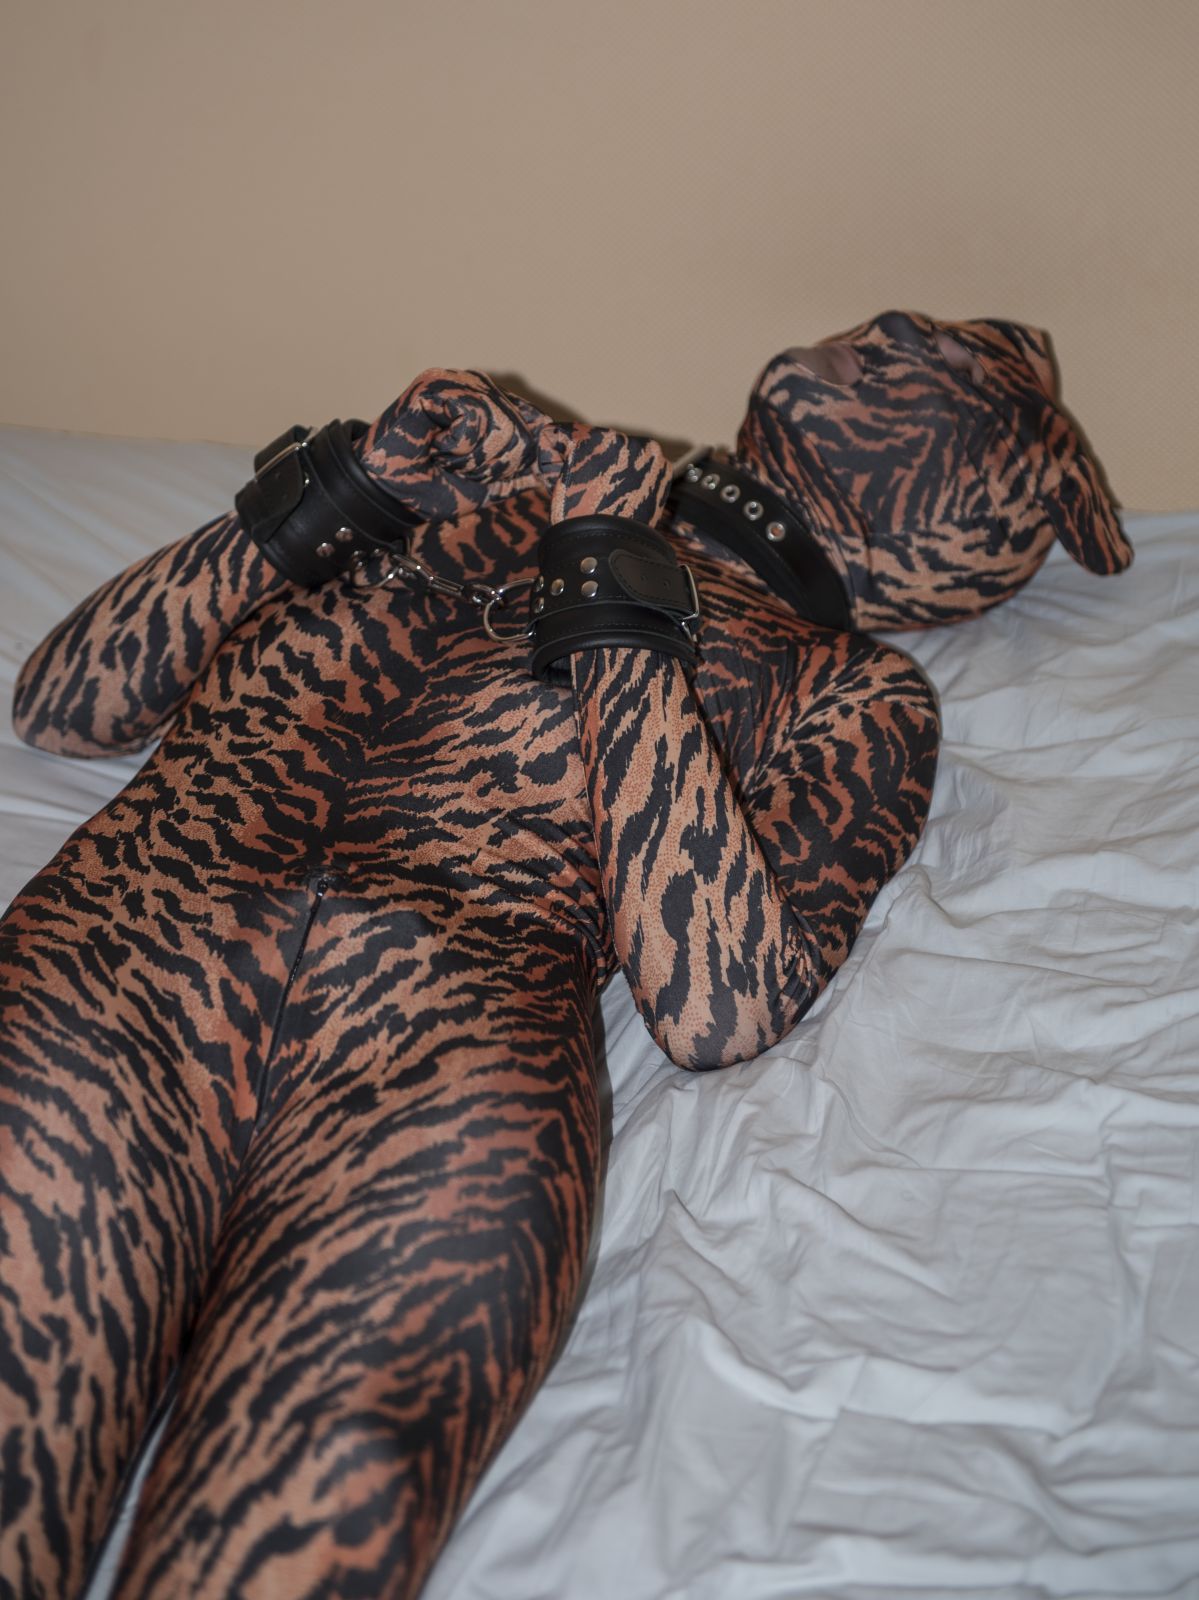 Tigre et cordes - photo par fredly
